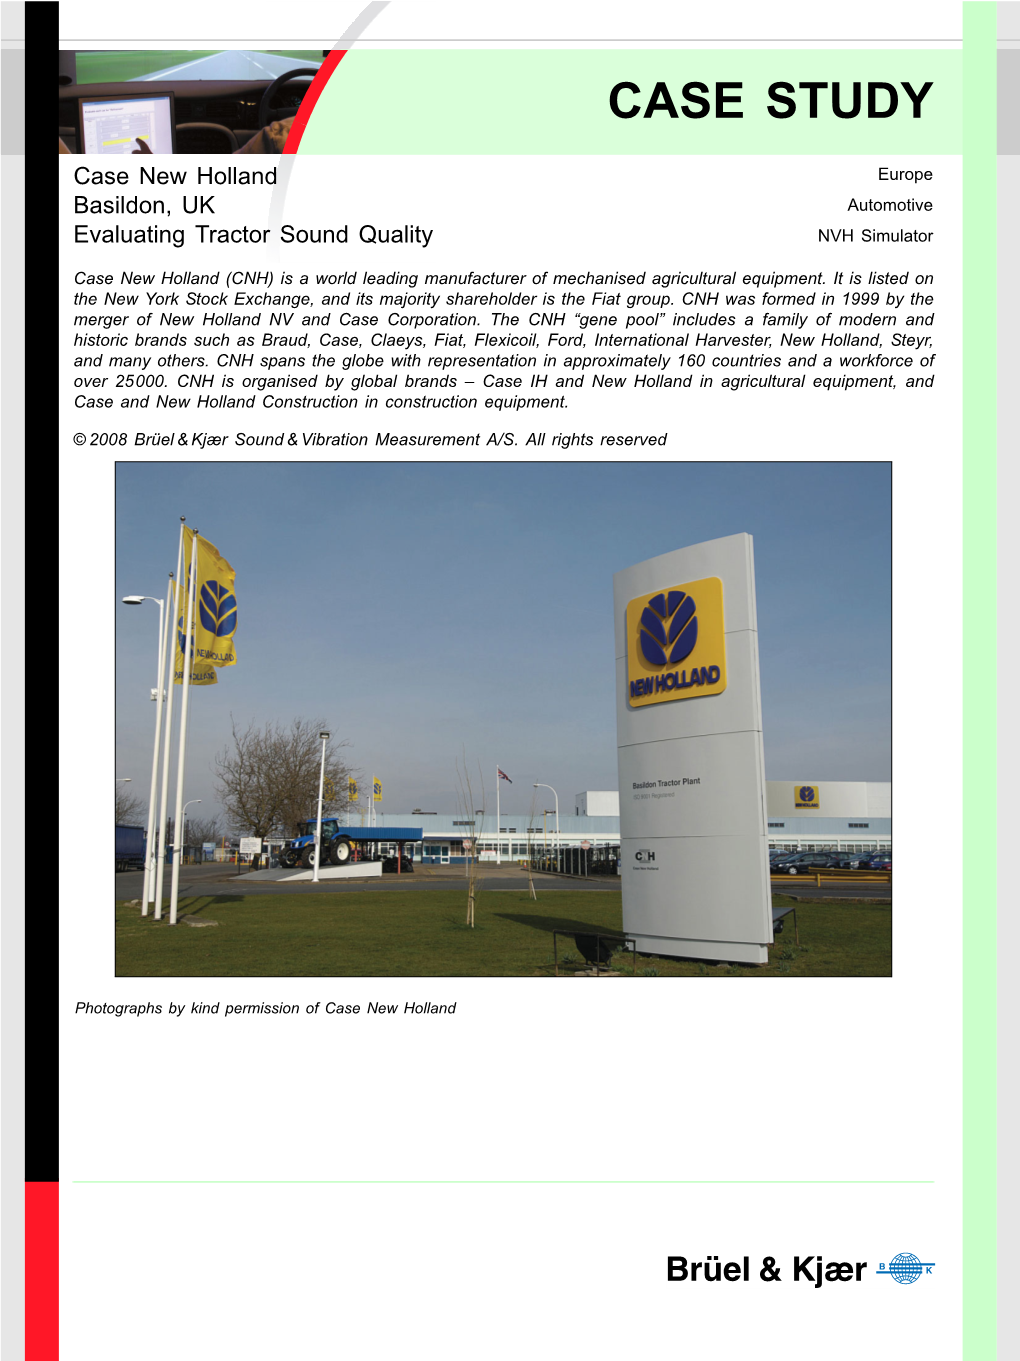 Case Study: Case New Holland, Basildon, UK, Evaluating Tractor Sound Quality (Europe, Automotive, NVH Simulator) (Bo0509)